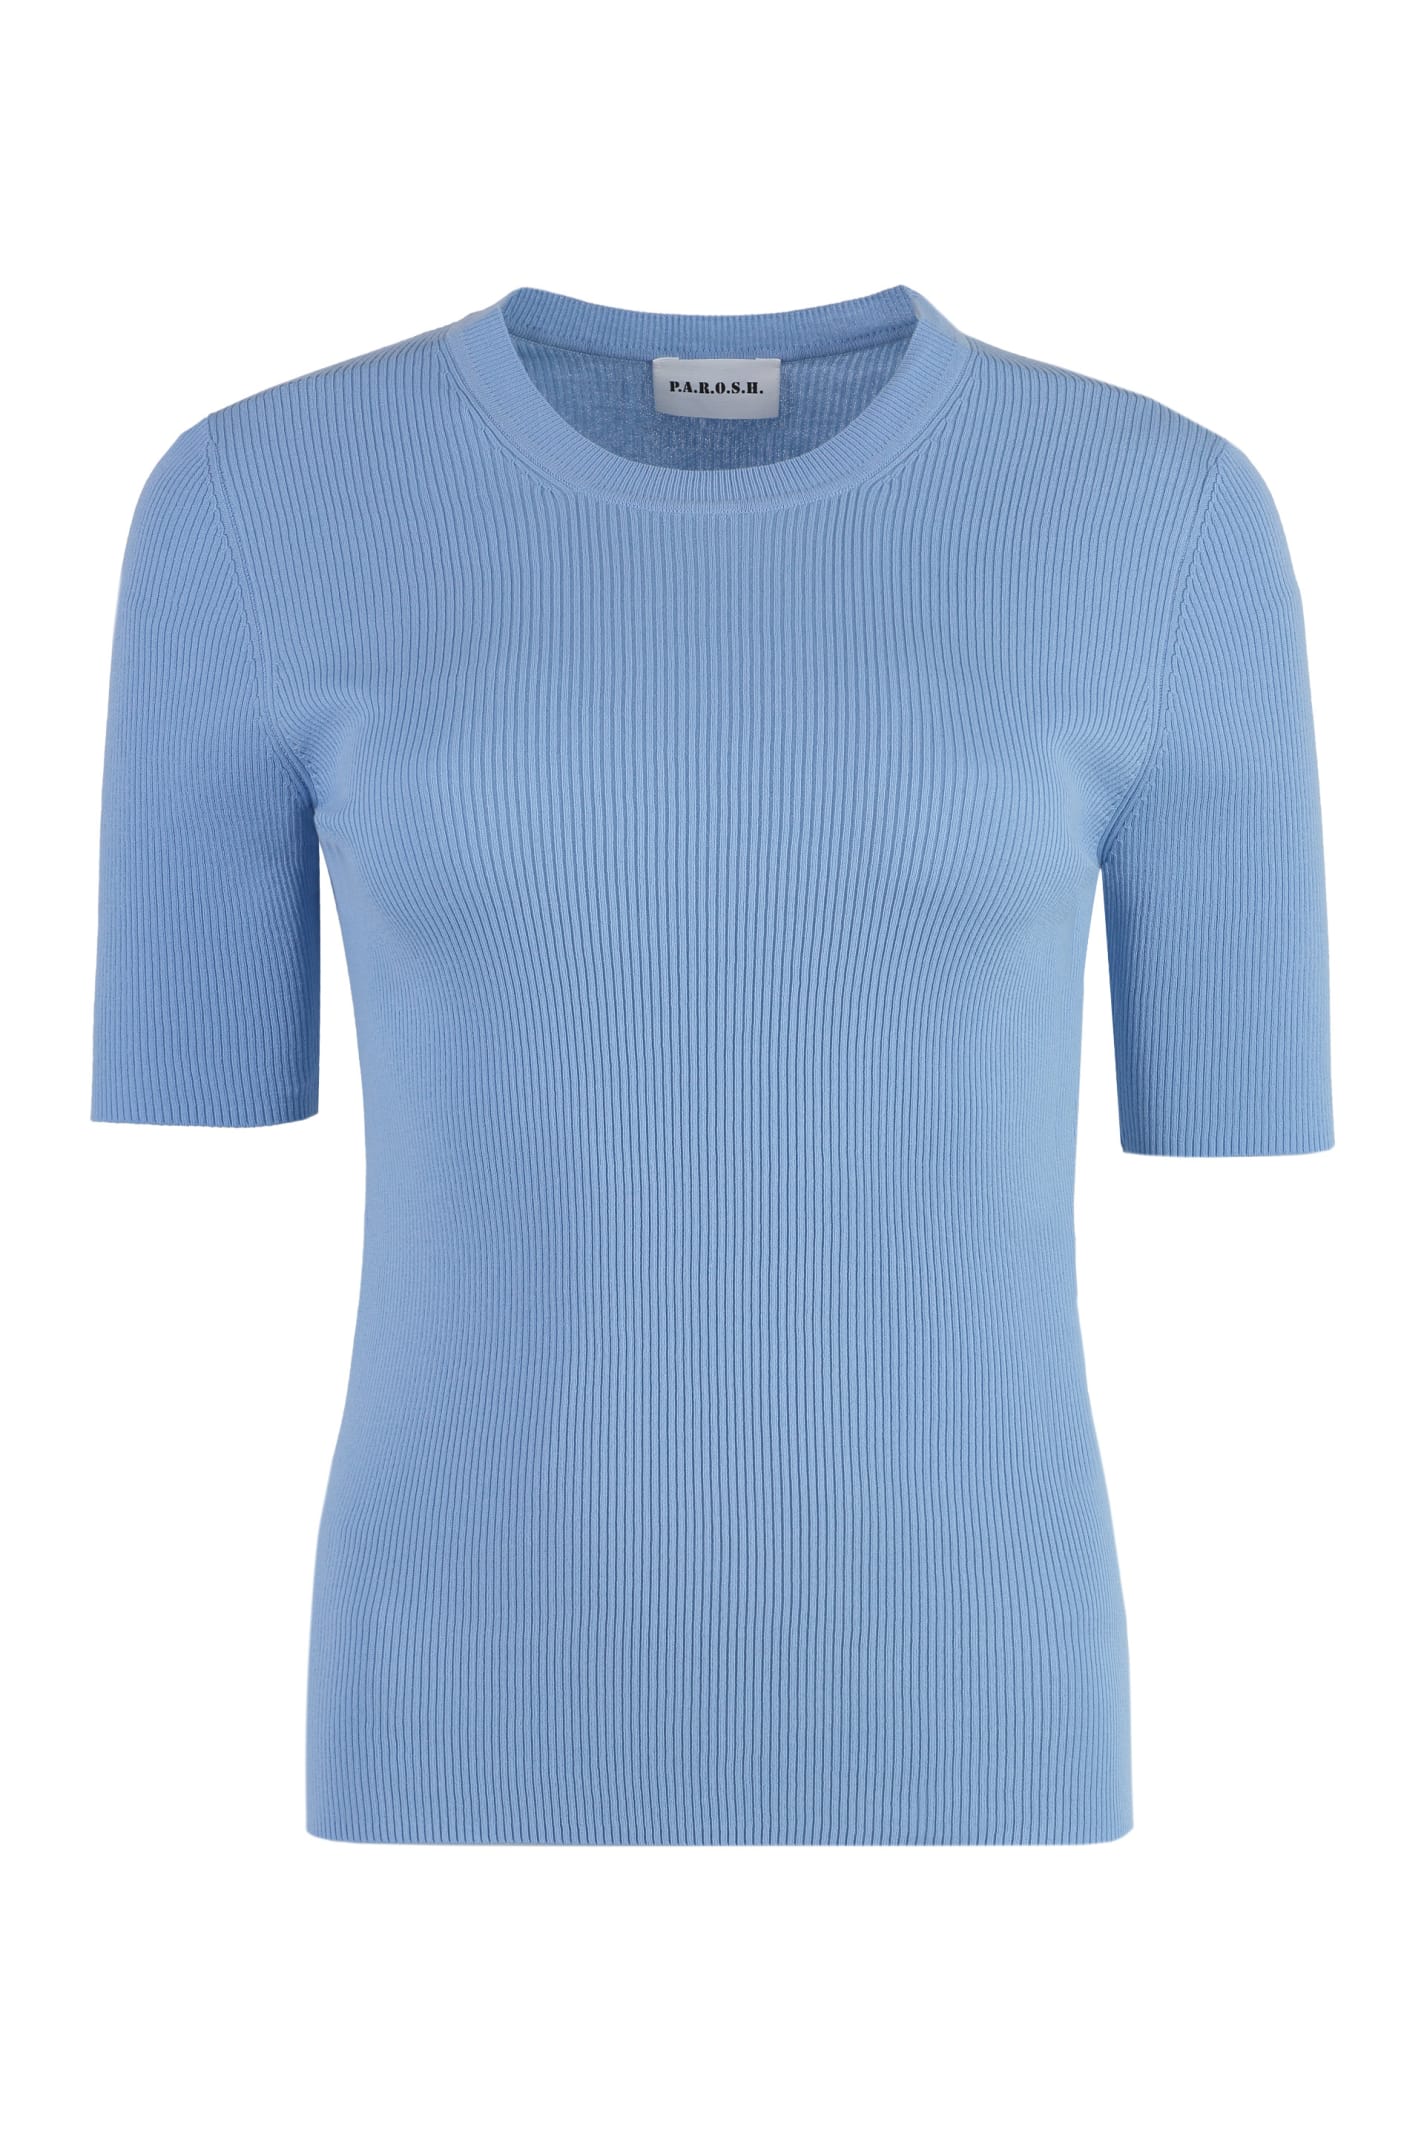 Shop P.a.r.o.s.h Cotton Knit T-shirt In Light Blue